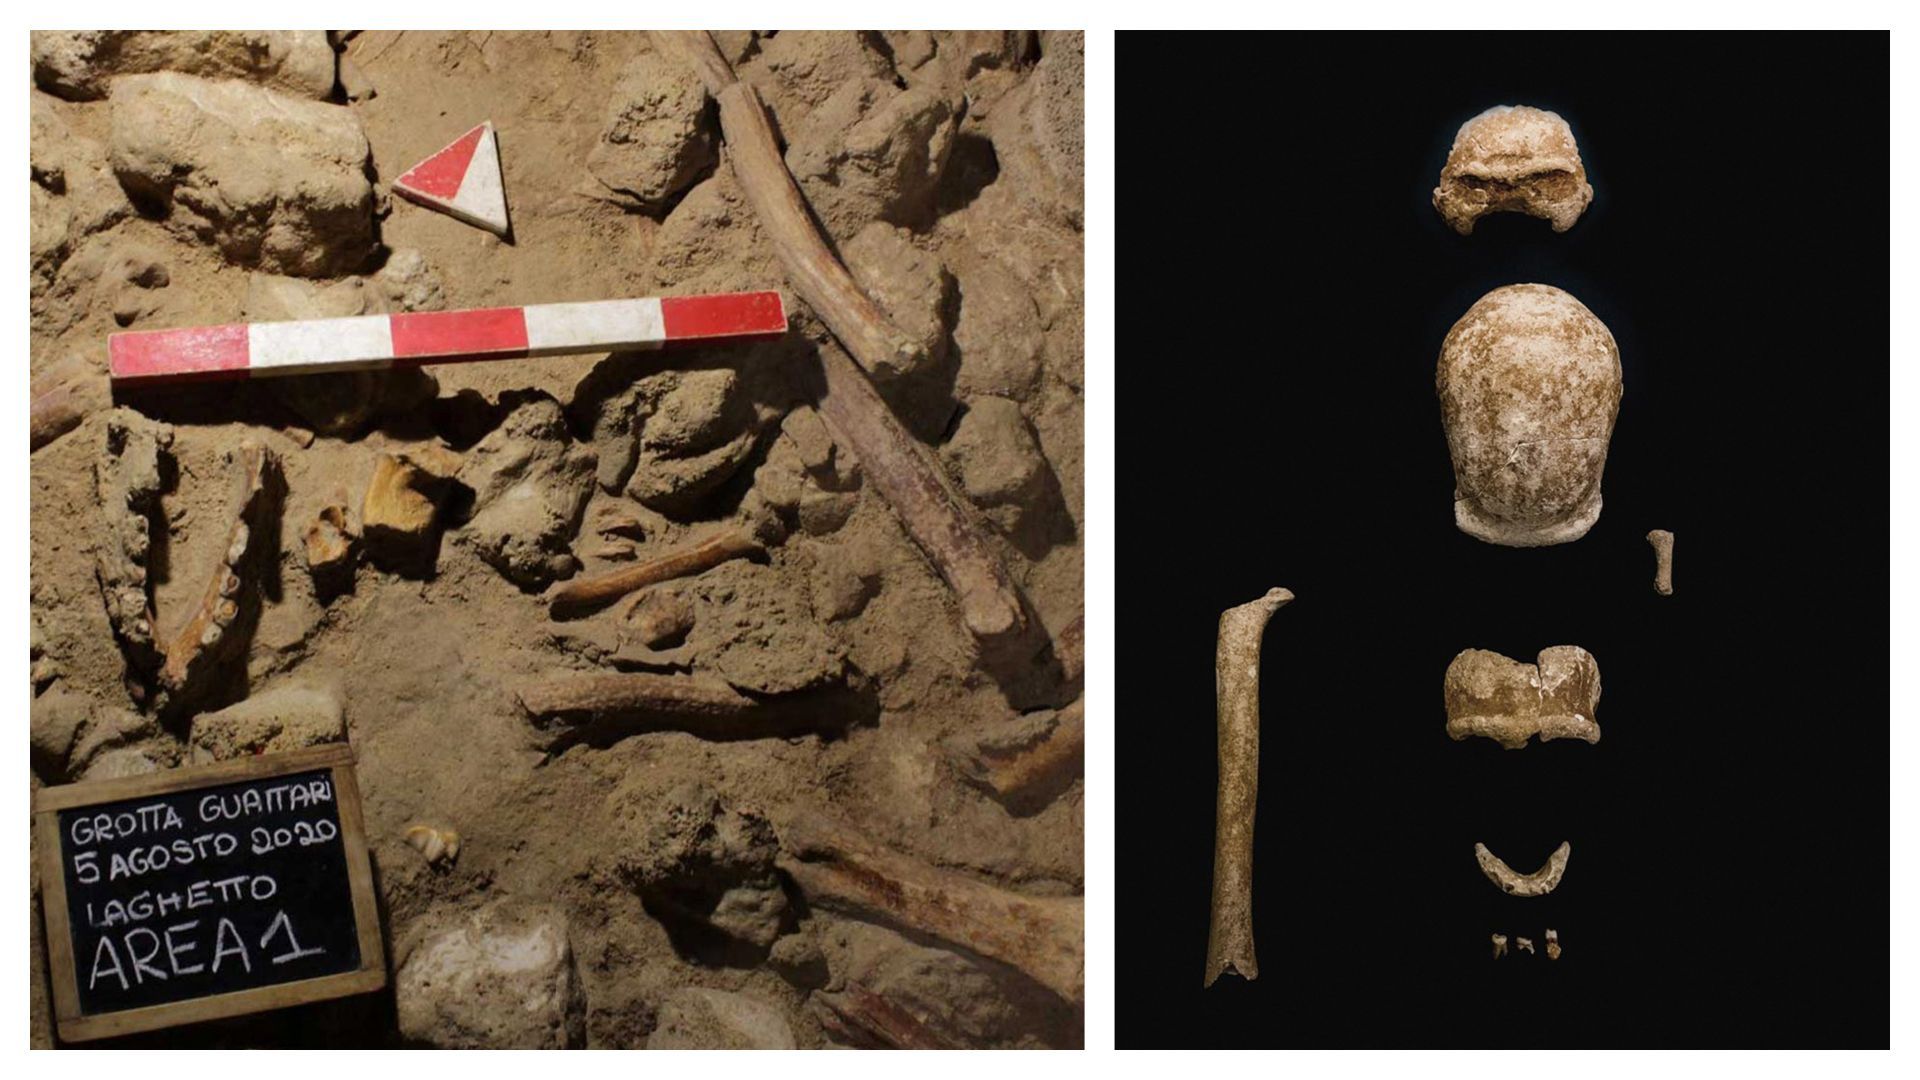 Photo non datée rendue publique le 8 mai 2021 par le ministère italien de la Culture, qui montre la grotte Guattari à San Felice Circeo, où les restes fossilisés de neuf Néandertaliens ont été découverts.